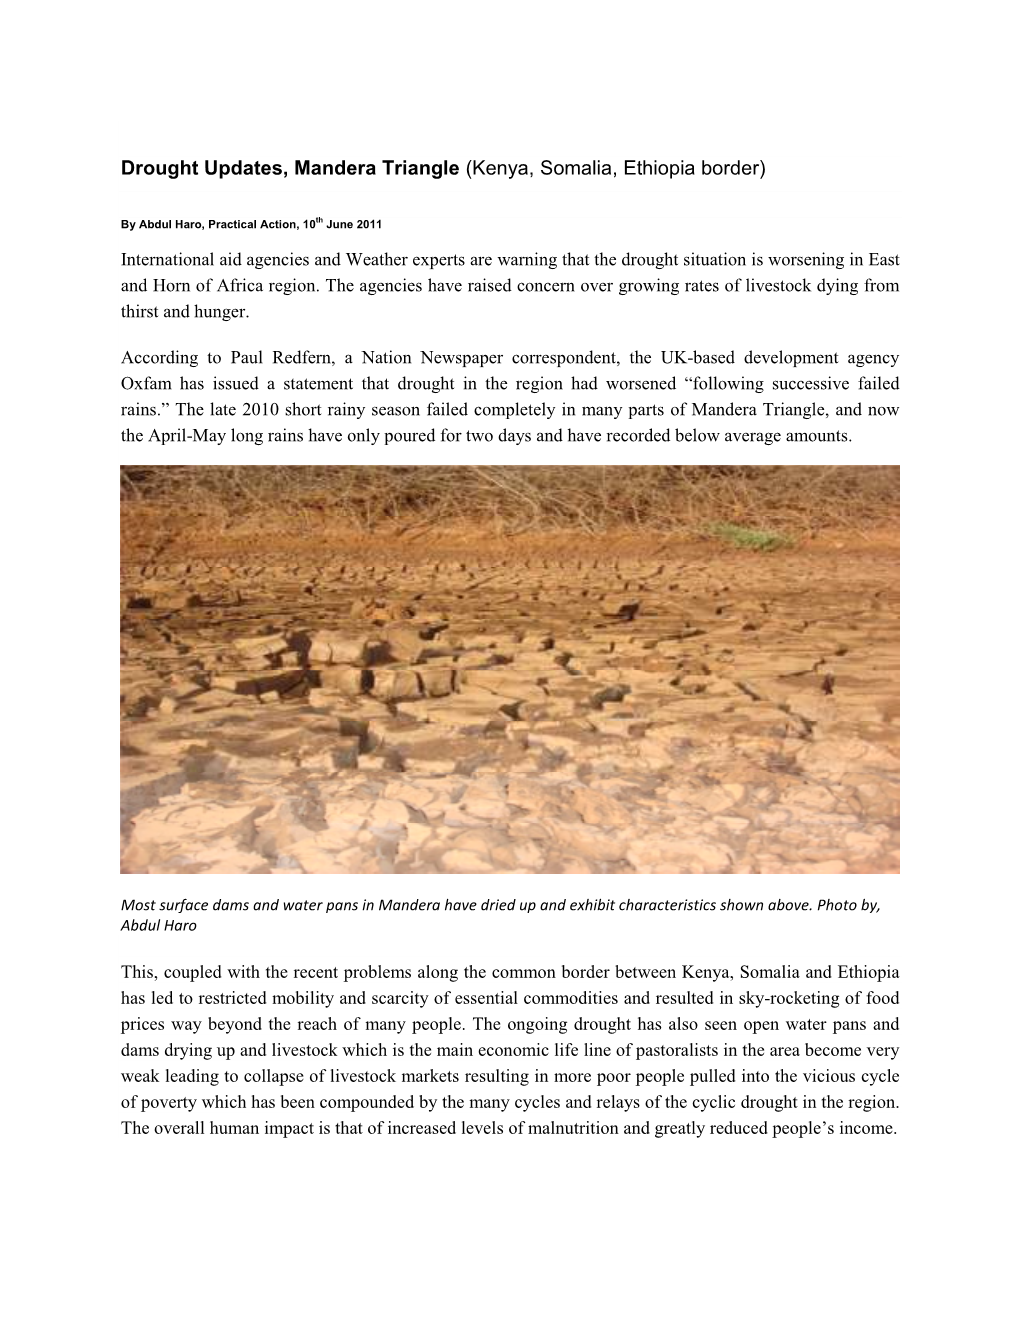 Drought Updates, Mandera Triangle (Kenya, Somalia, Ethiopia Border)